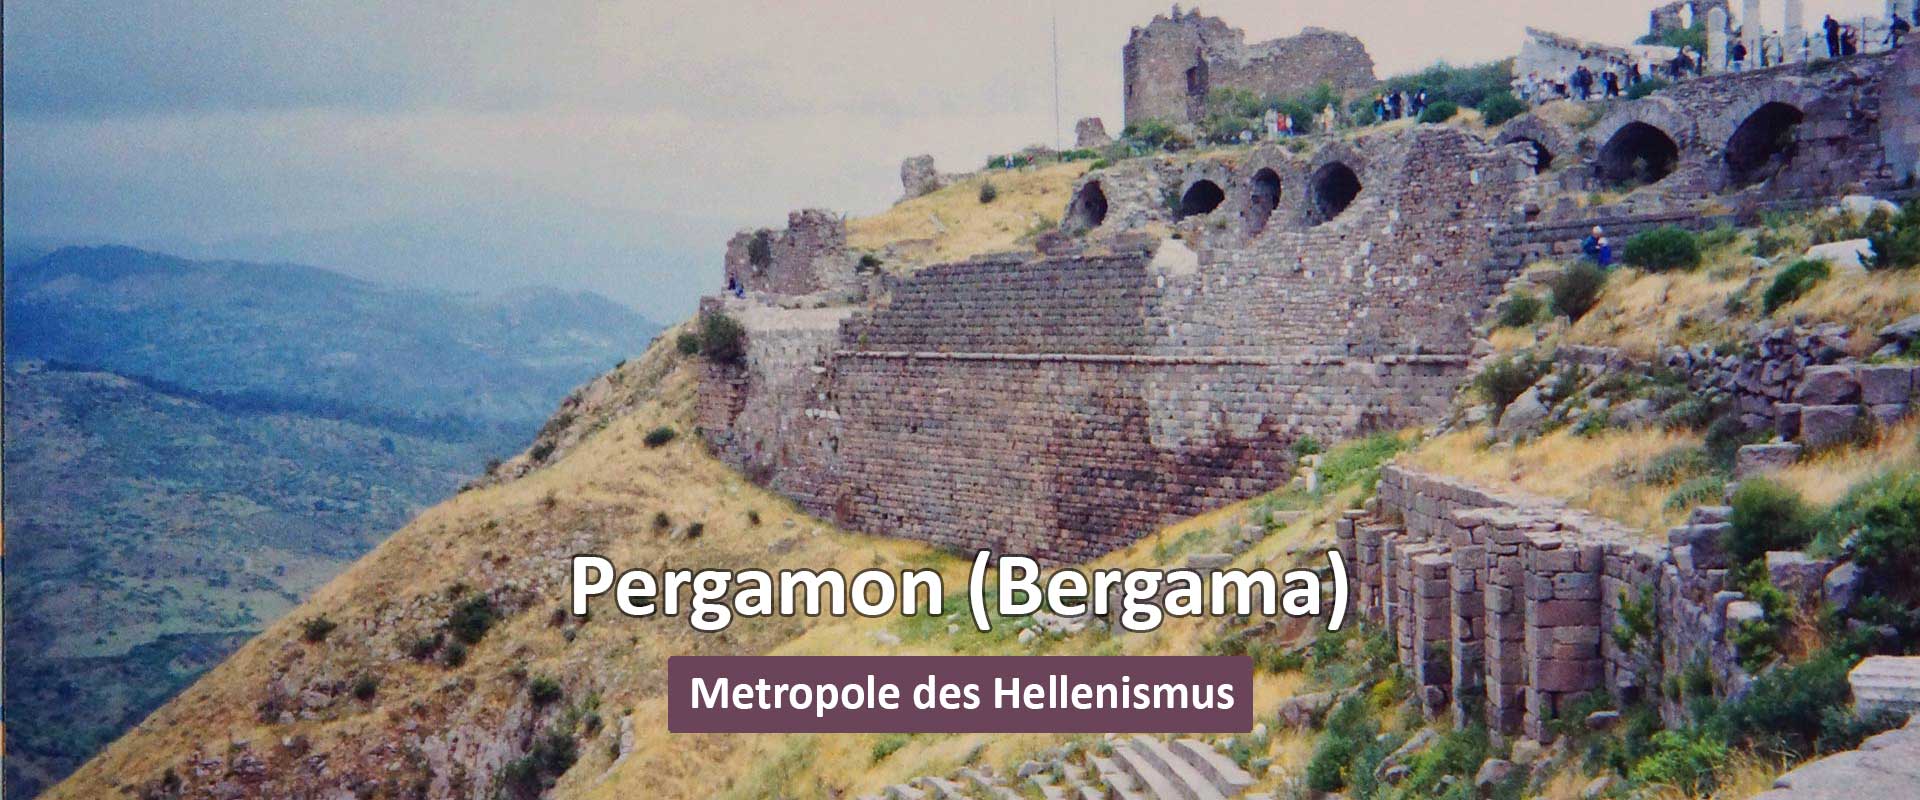 Bergama (Pergamon)